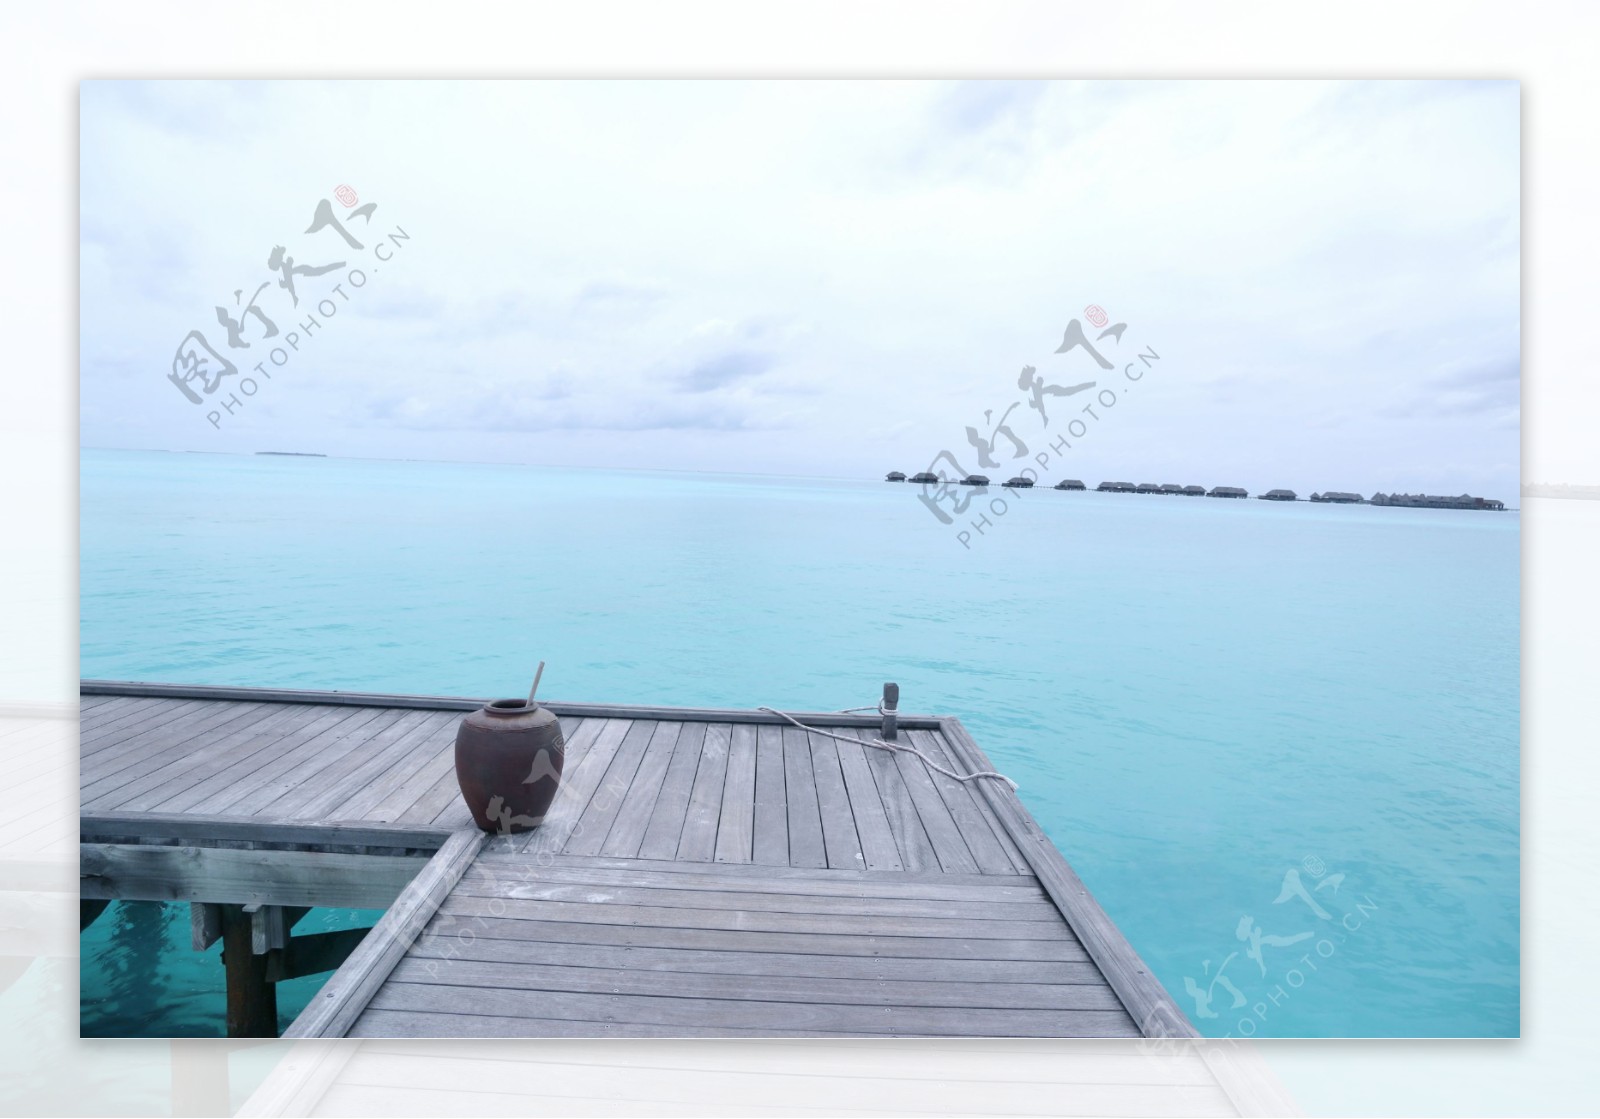 马尔代夫海岛风景图片